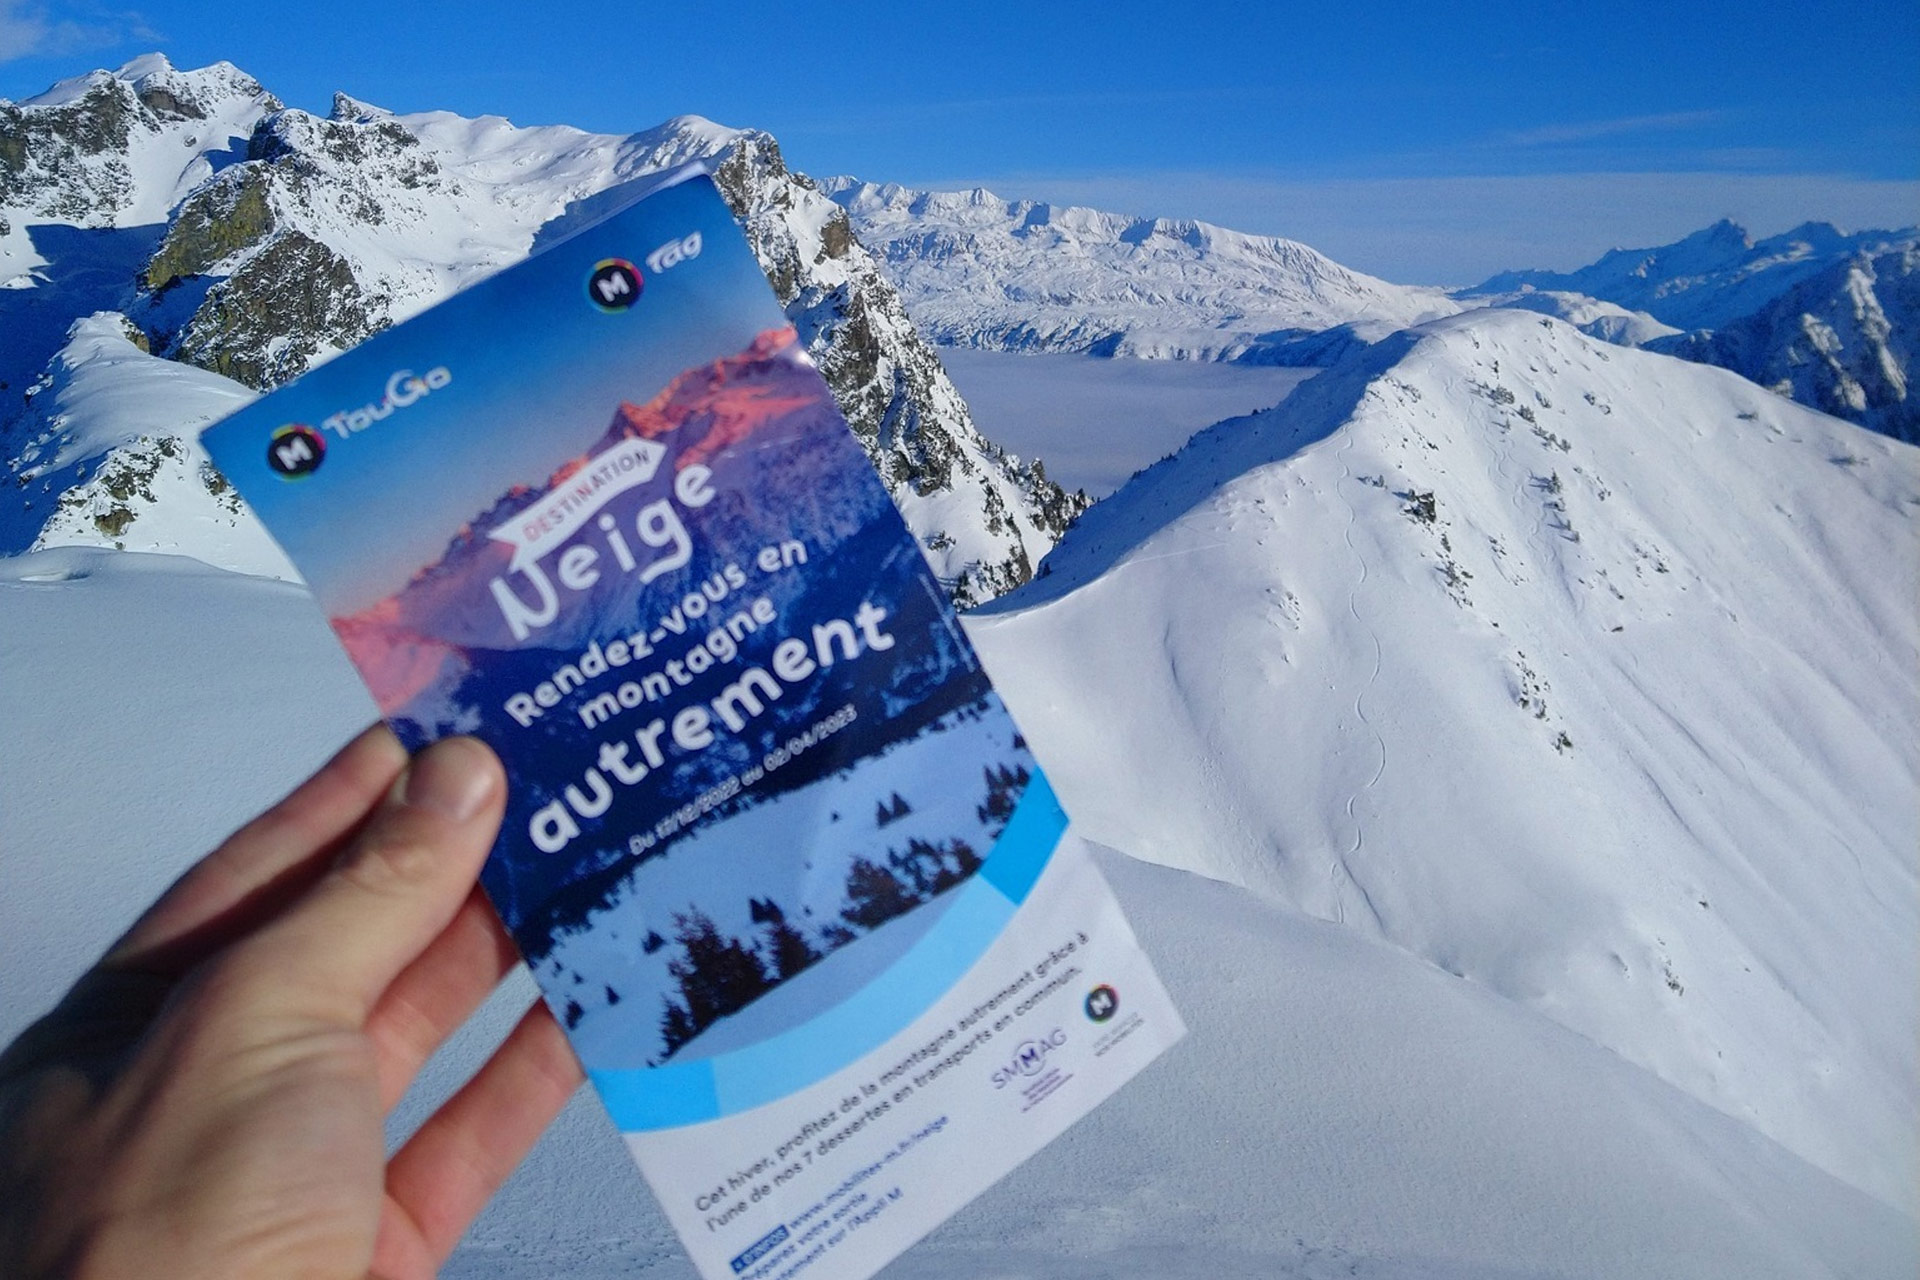 Chamrousse winter bus mobility mountain ski resort grenoble isere french alps france - © SD - OT Chamrousse